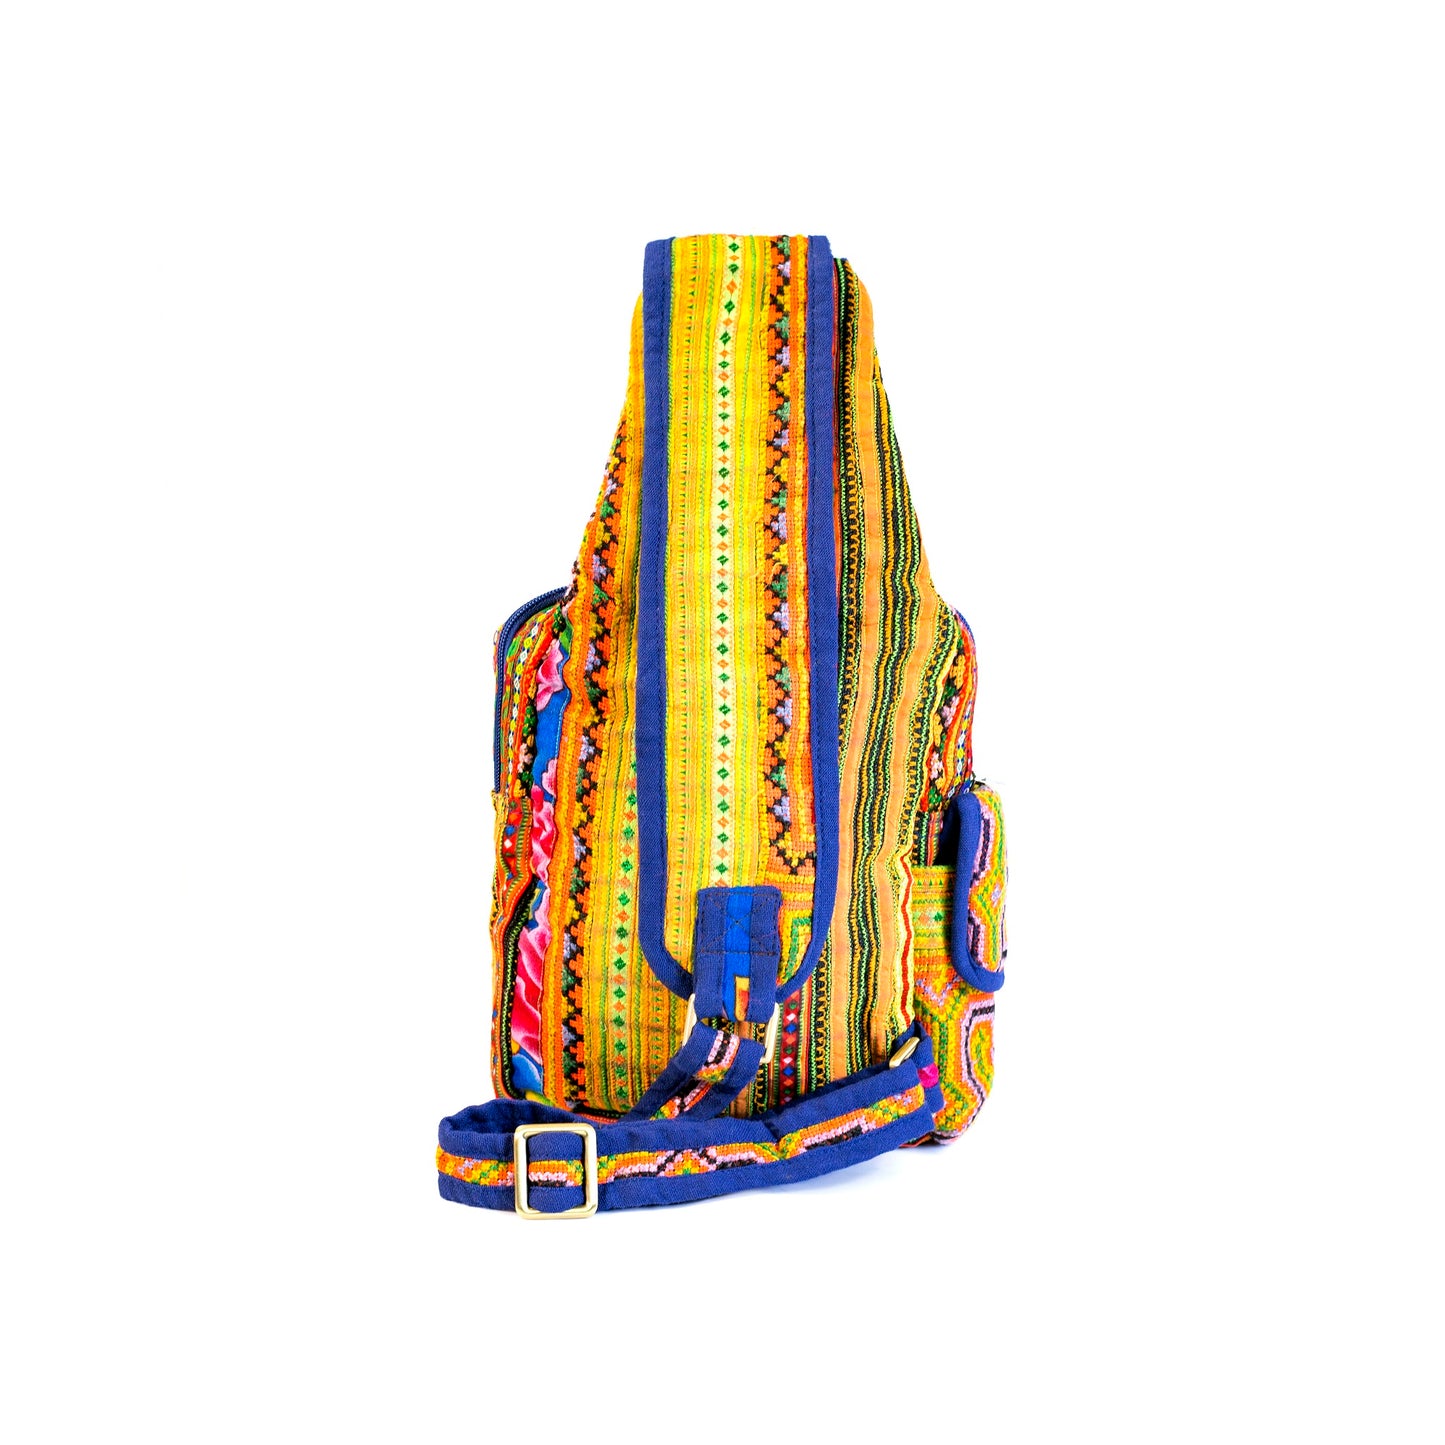 Boho-stil linne, broderier slingpåse, H'mong tribal mönster i ORANGE silkestråd och blå fälg